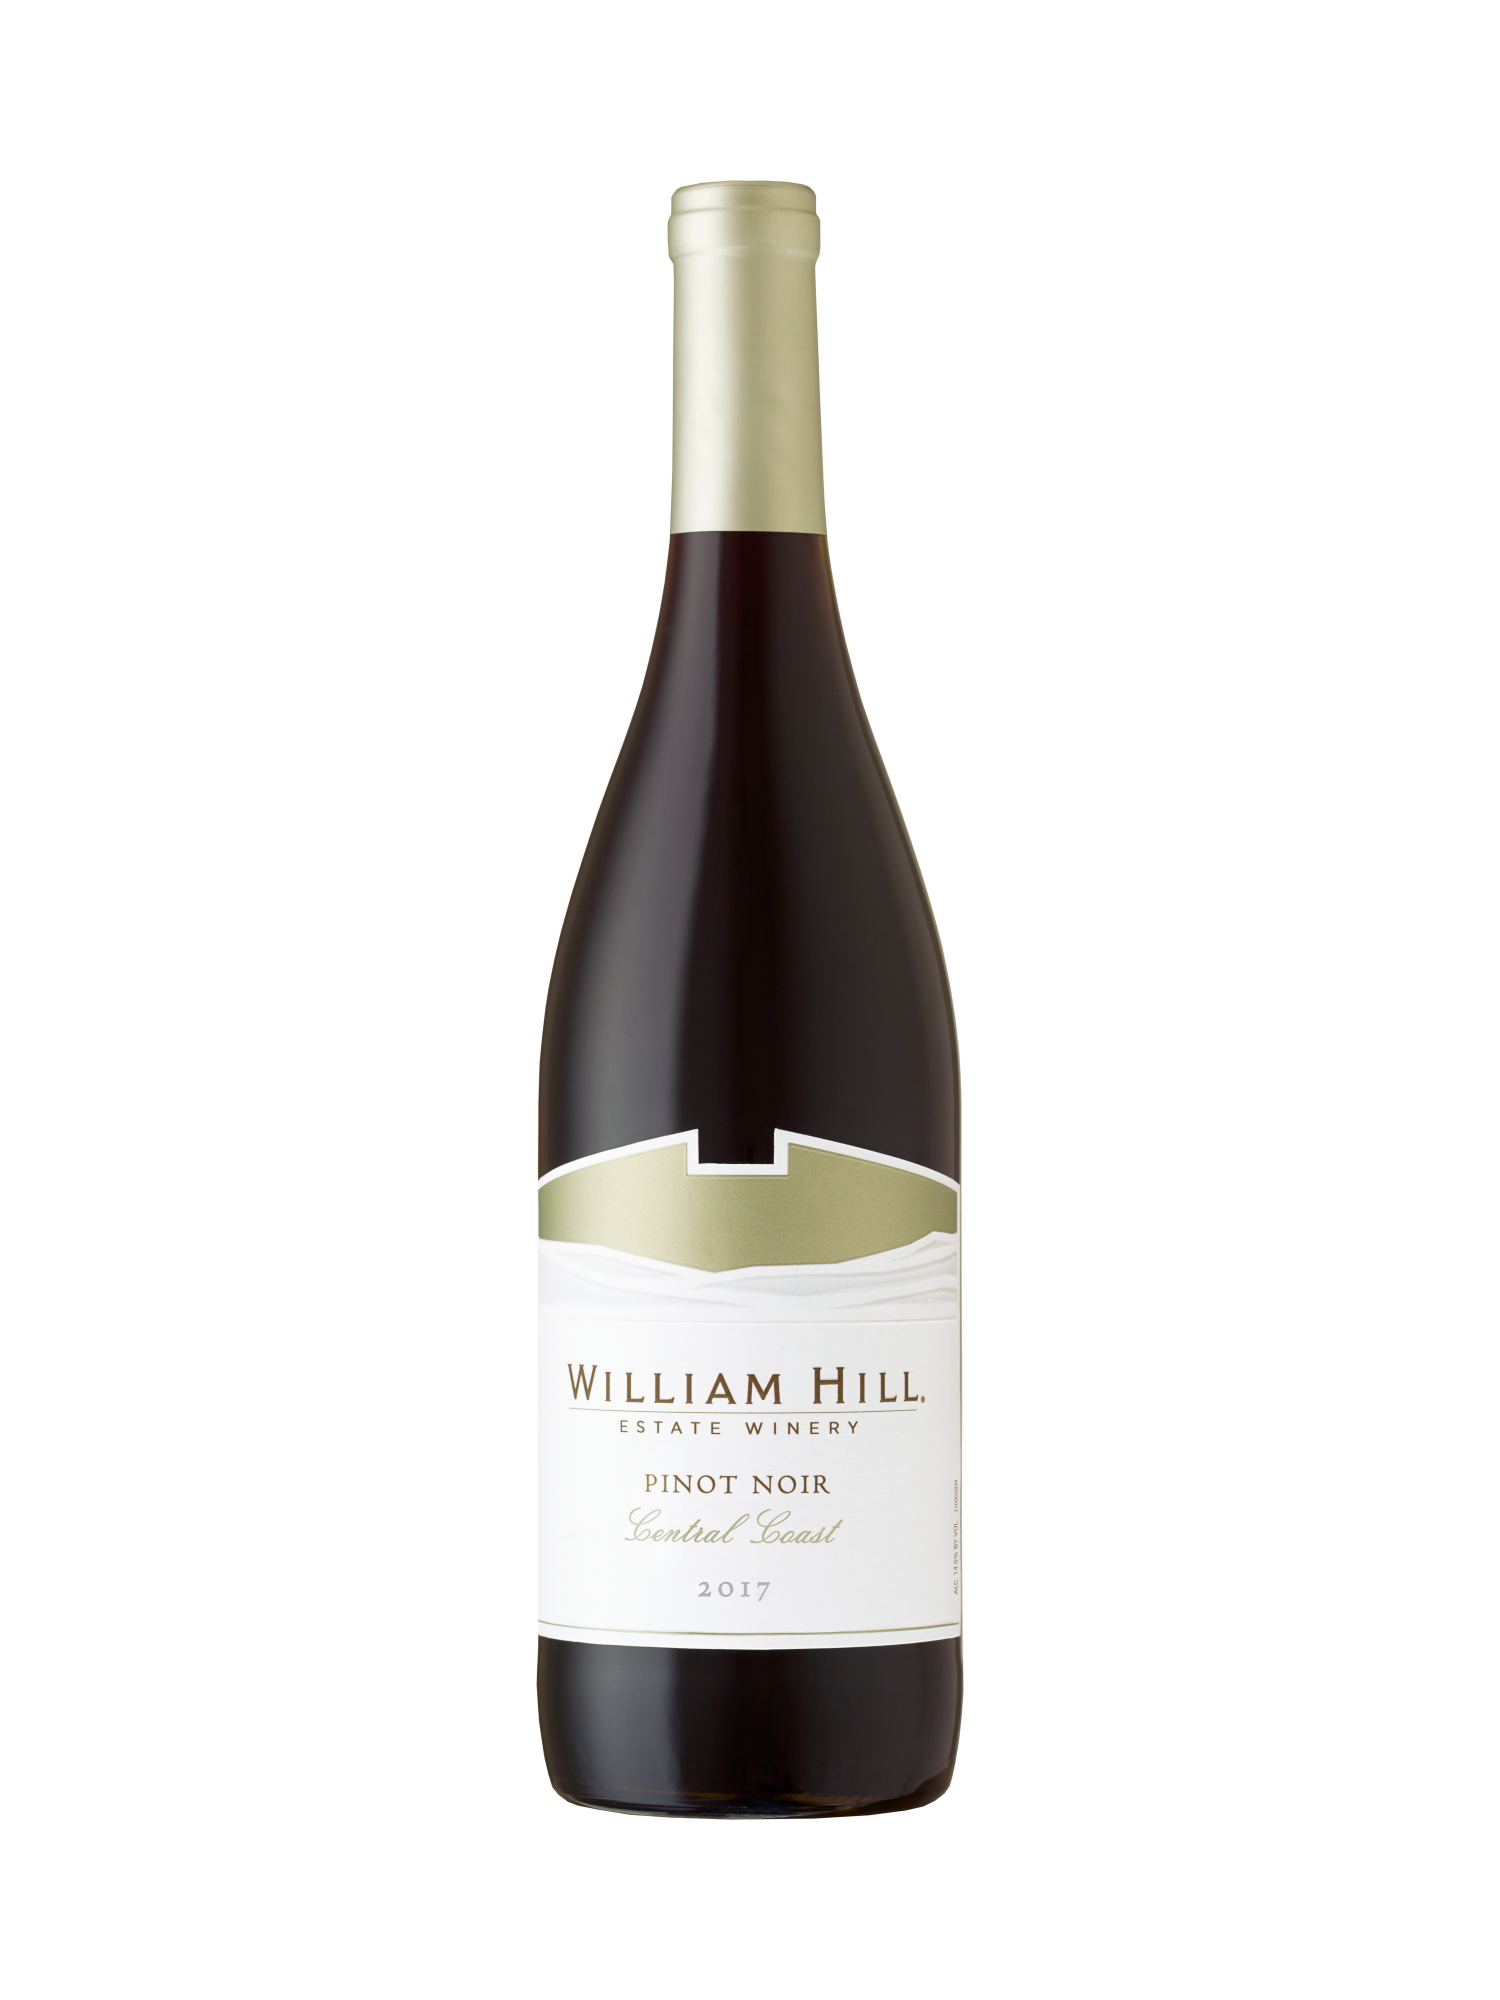 william hill merlot reviews ratings